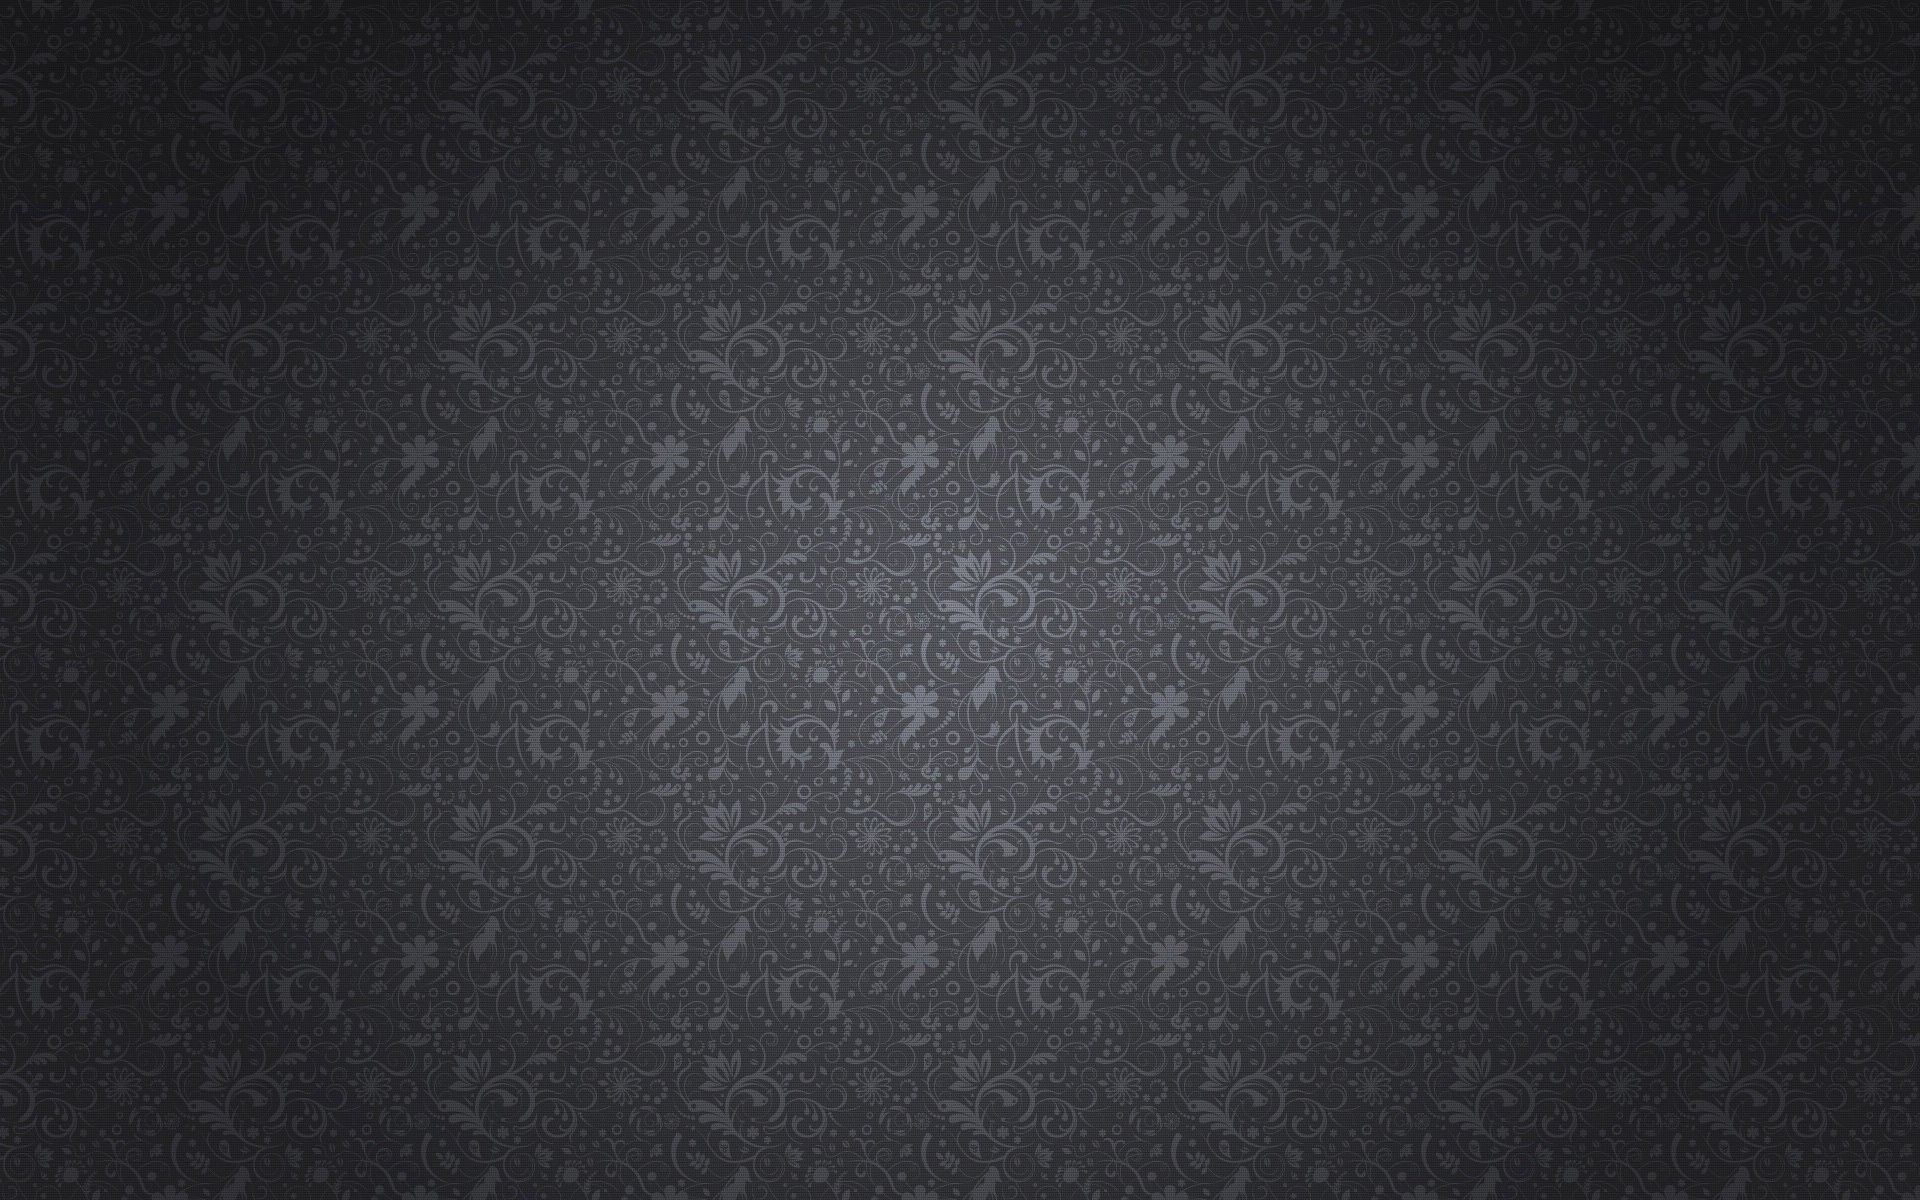 1920x1200 Swirly wall pattern HD Wallpaper 1920x1080 Swirly wall pattern HD Wallpaper  